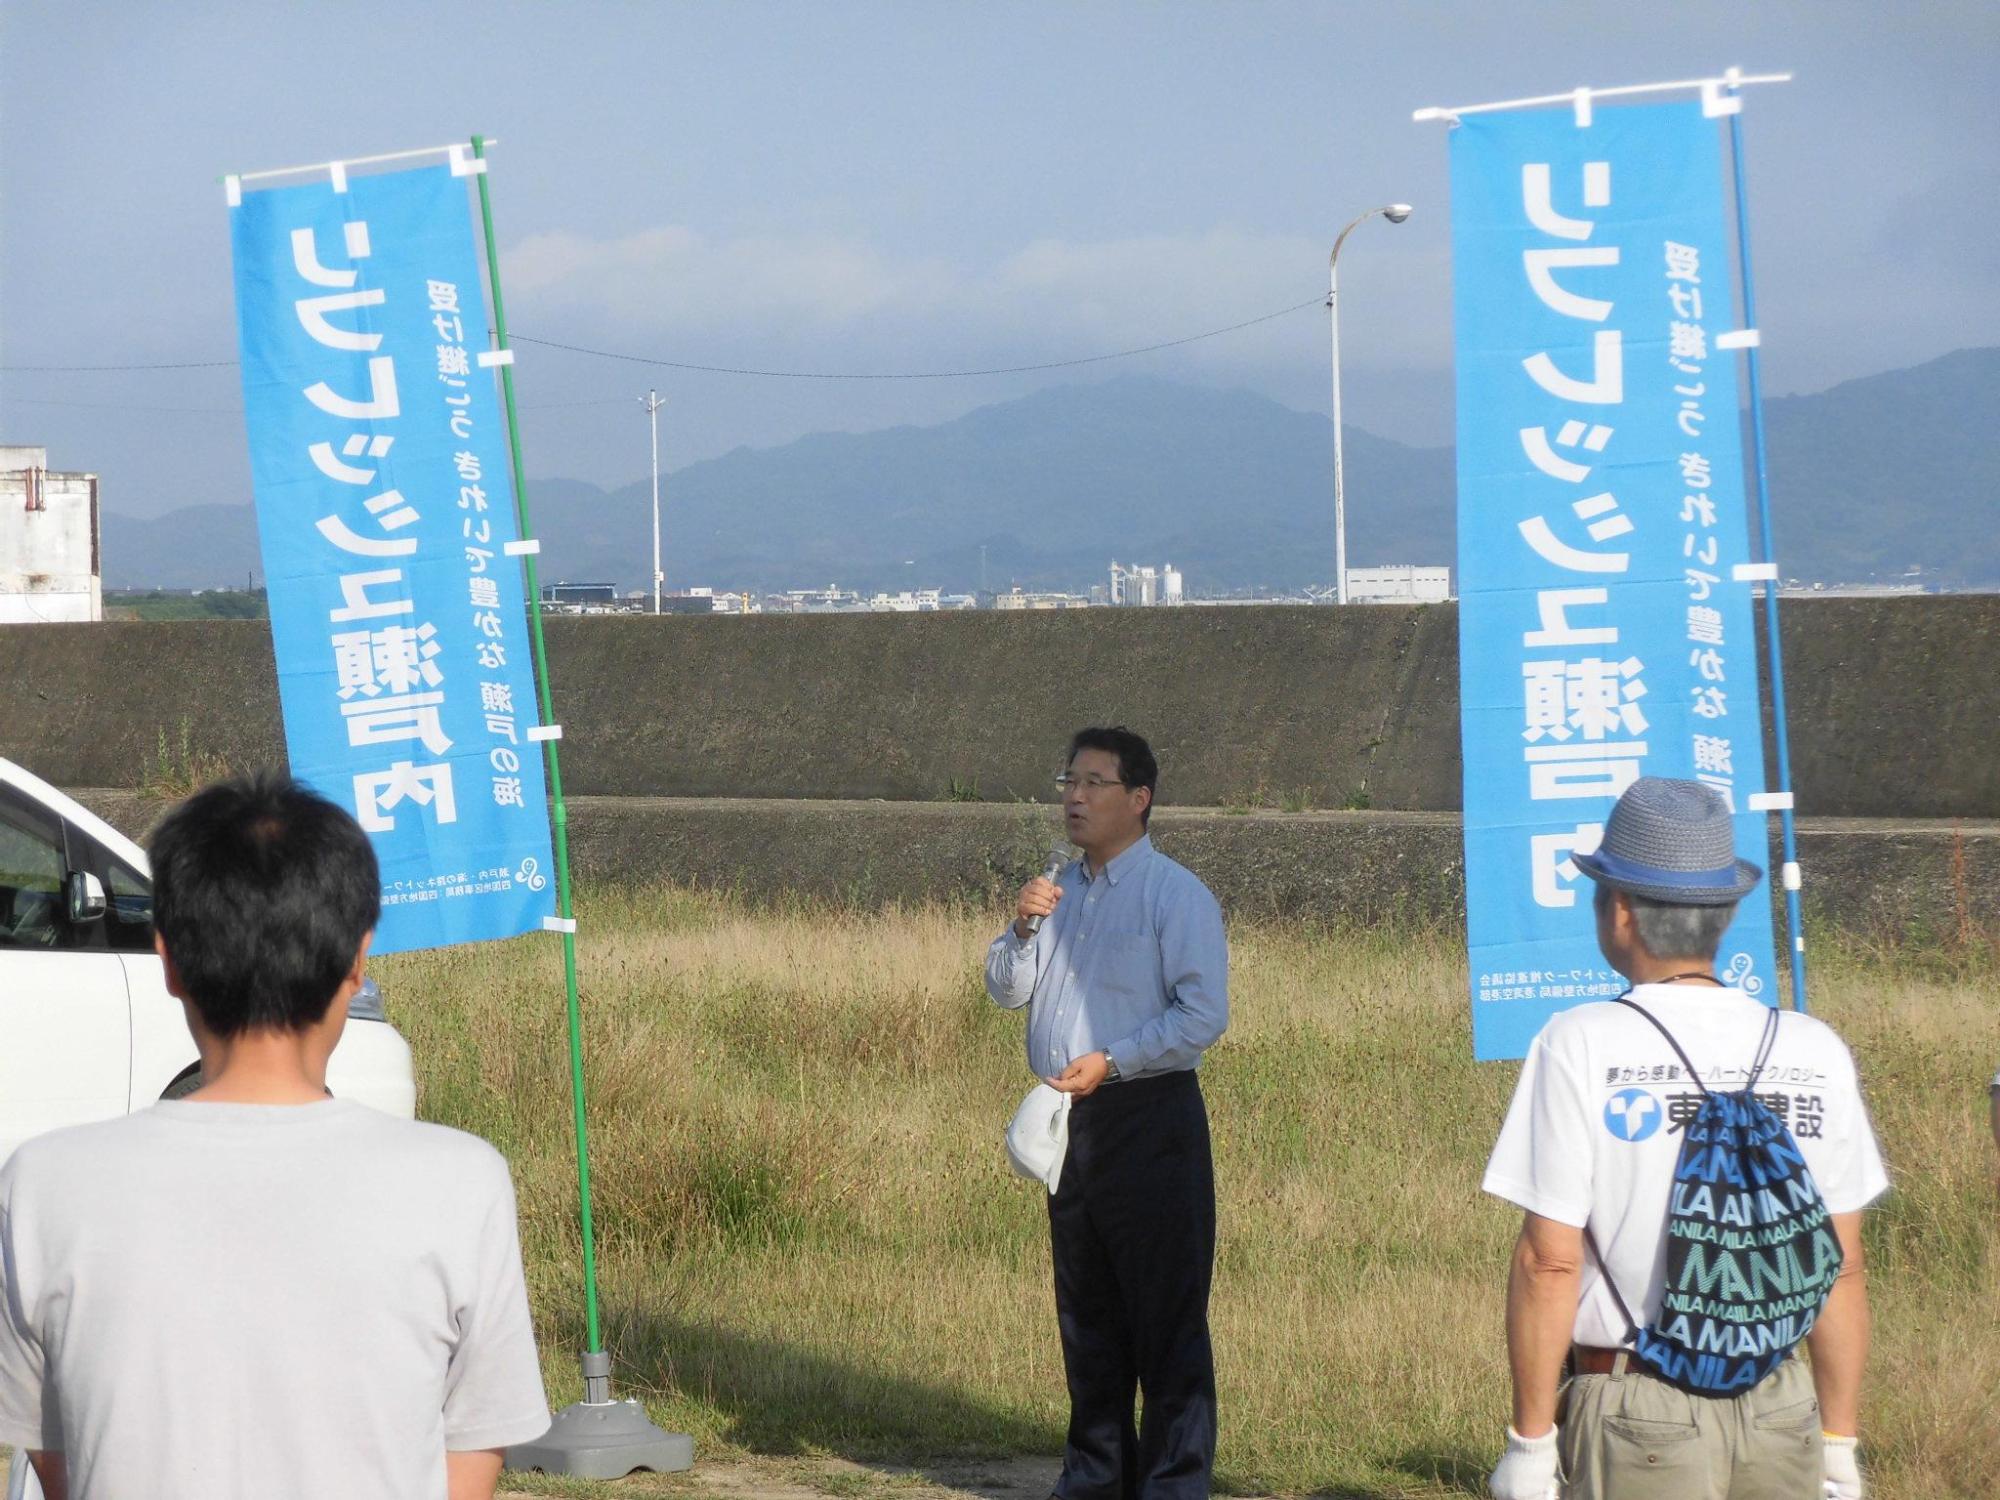 海岸清掃活動参加者たちの前で挨拶をする市長の写真